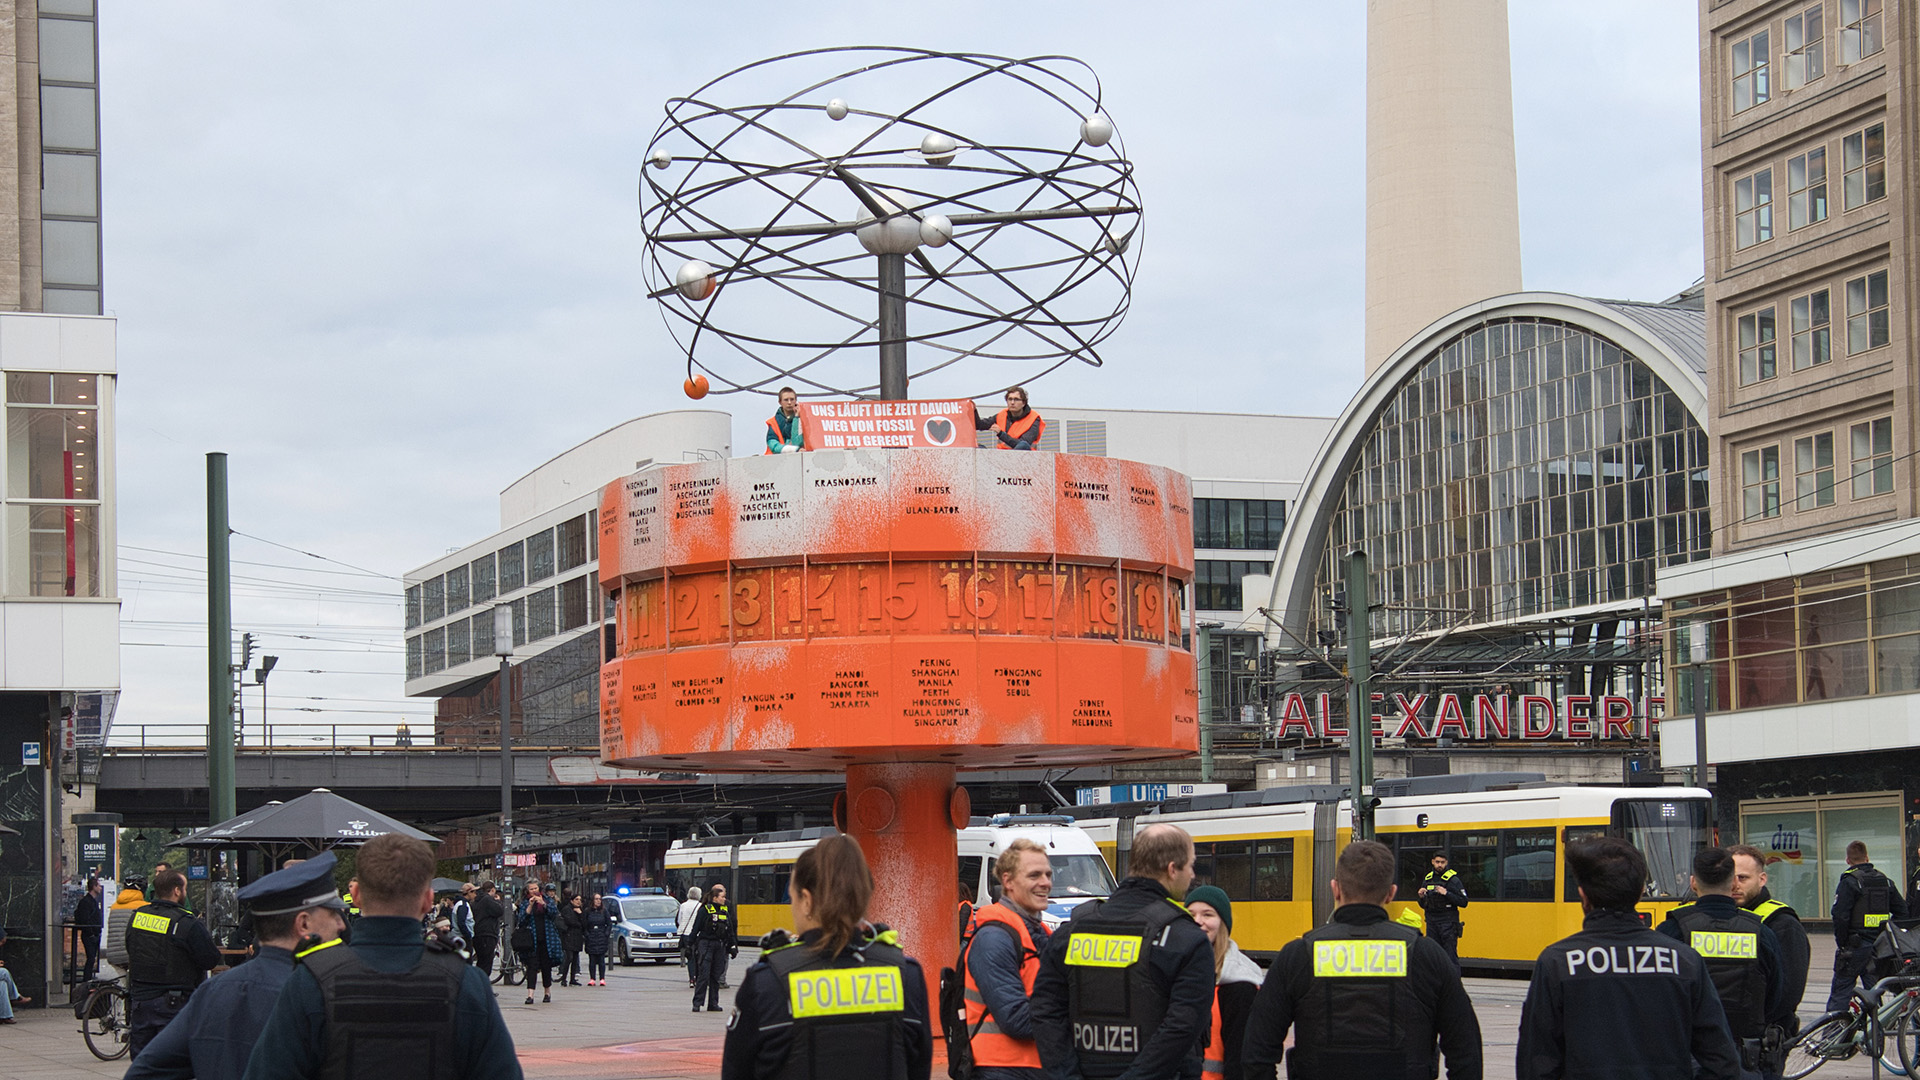 Archivbild: Aktivisten der Gruppe Letzte Generation haben die Weltzeituhr am Alexanderplatz Orange eingefärbt. (Quelle: dpa/Zinken)